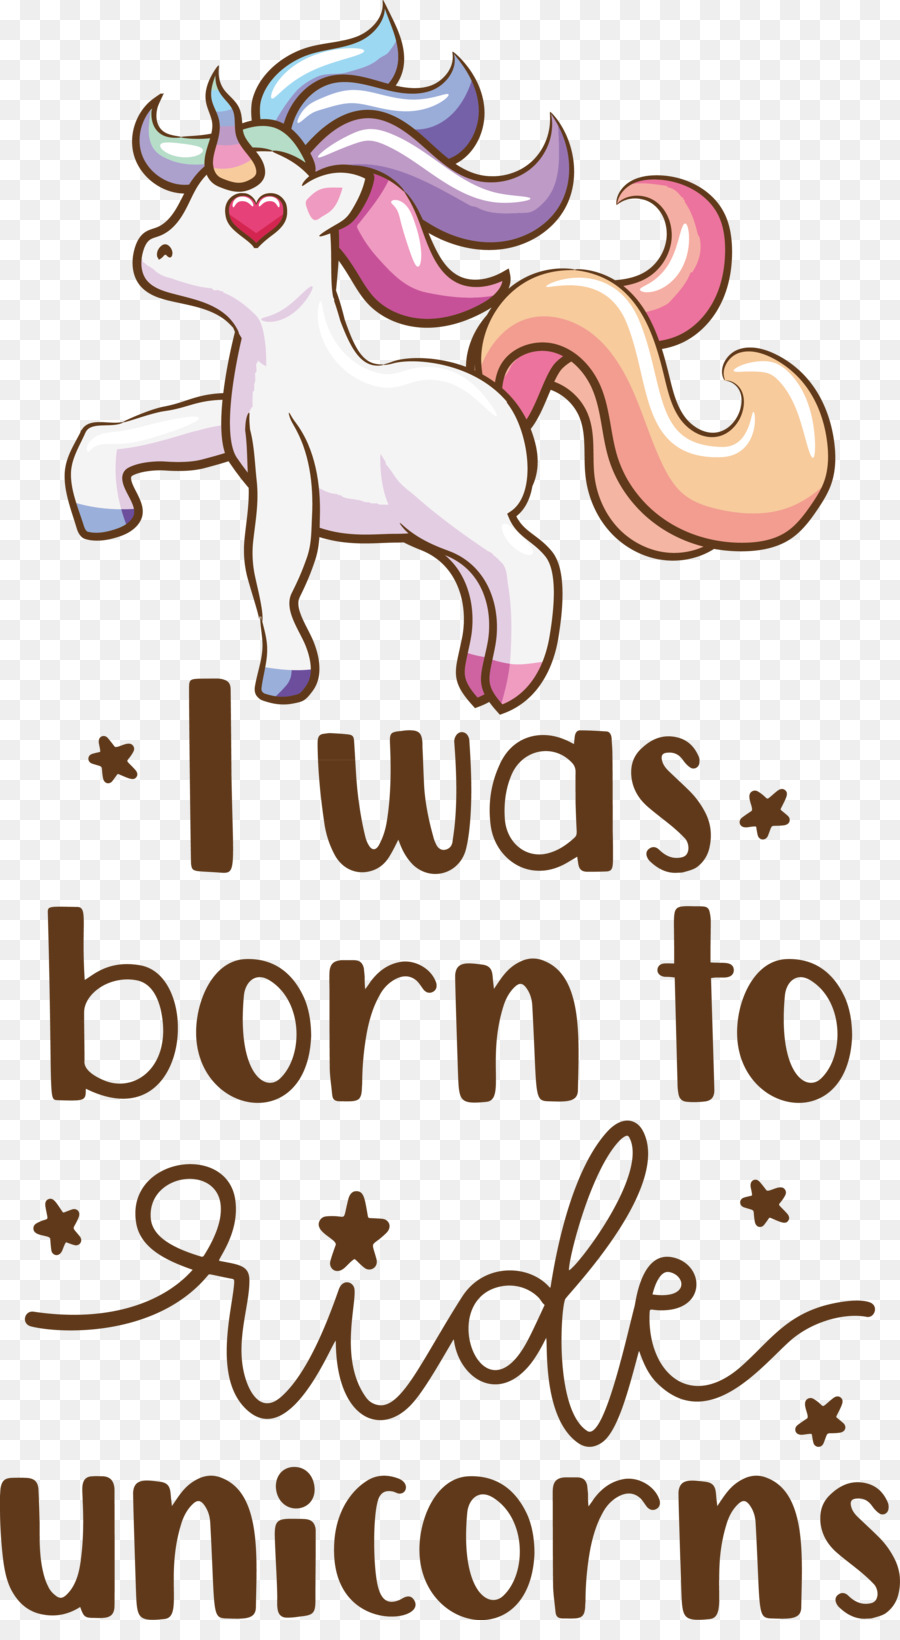 Unicorn Design & Born to Ride Unicorns